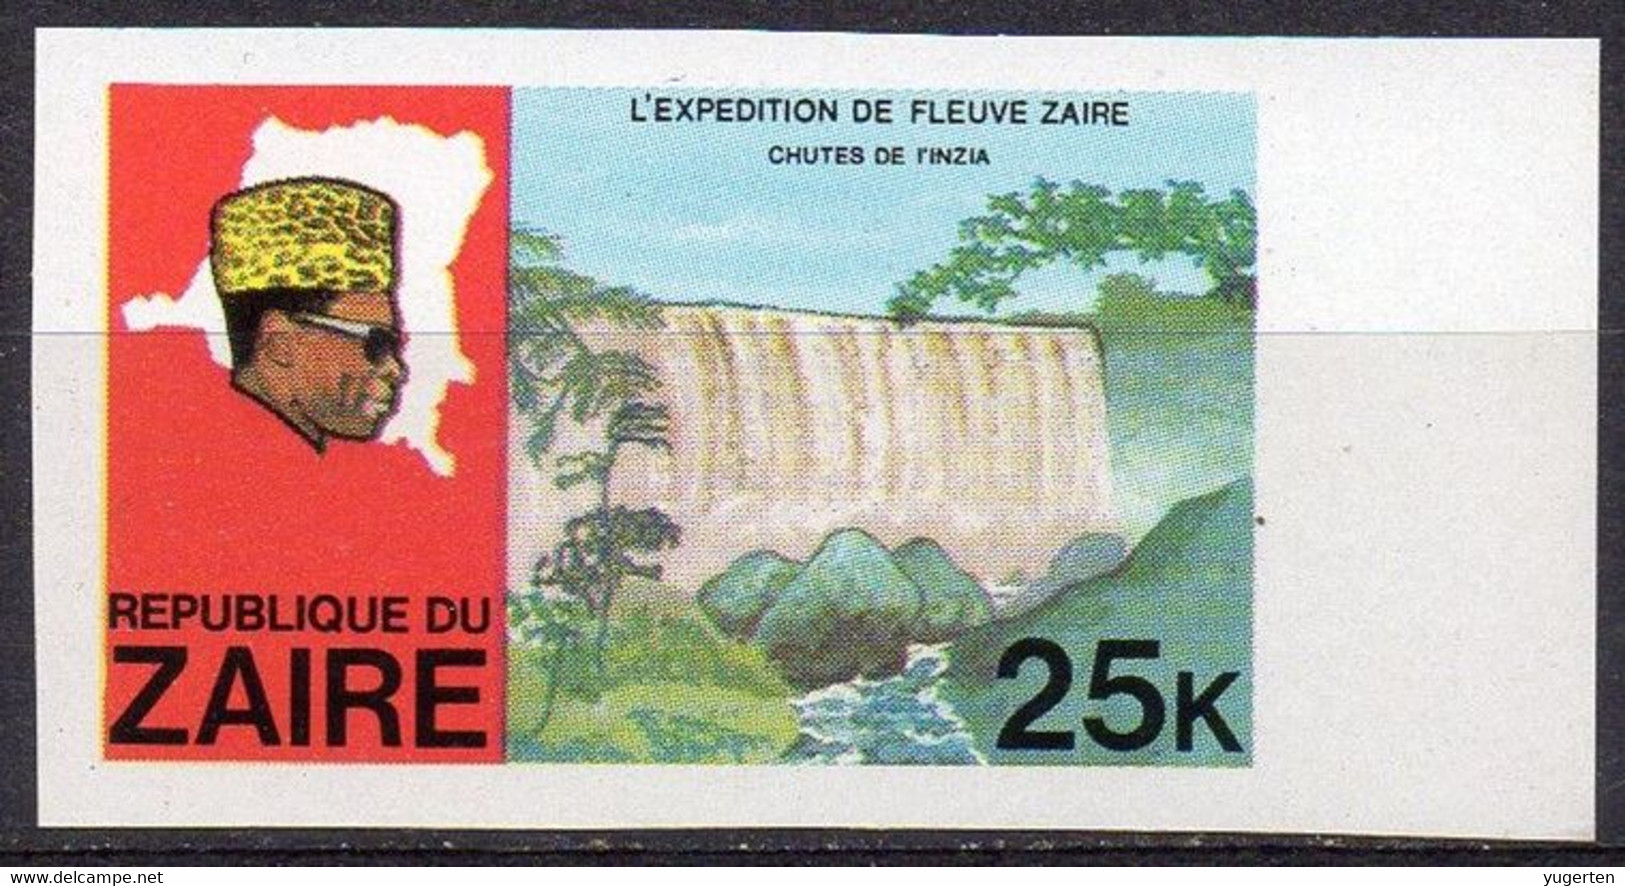 ZAÏRE 1979 - 1v - MNH - IMPERF - River Expedition - Inzia Falls - Rivierexpeditie - Inzia-watervallen Water - Wasser Eau - Wasser